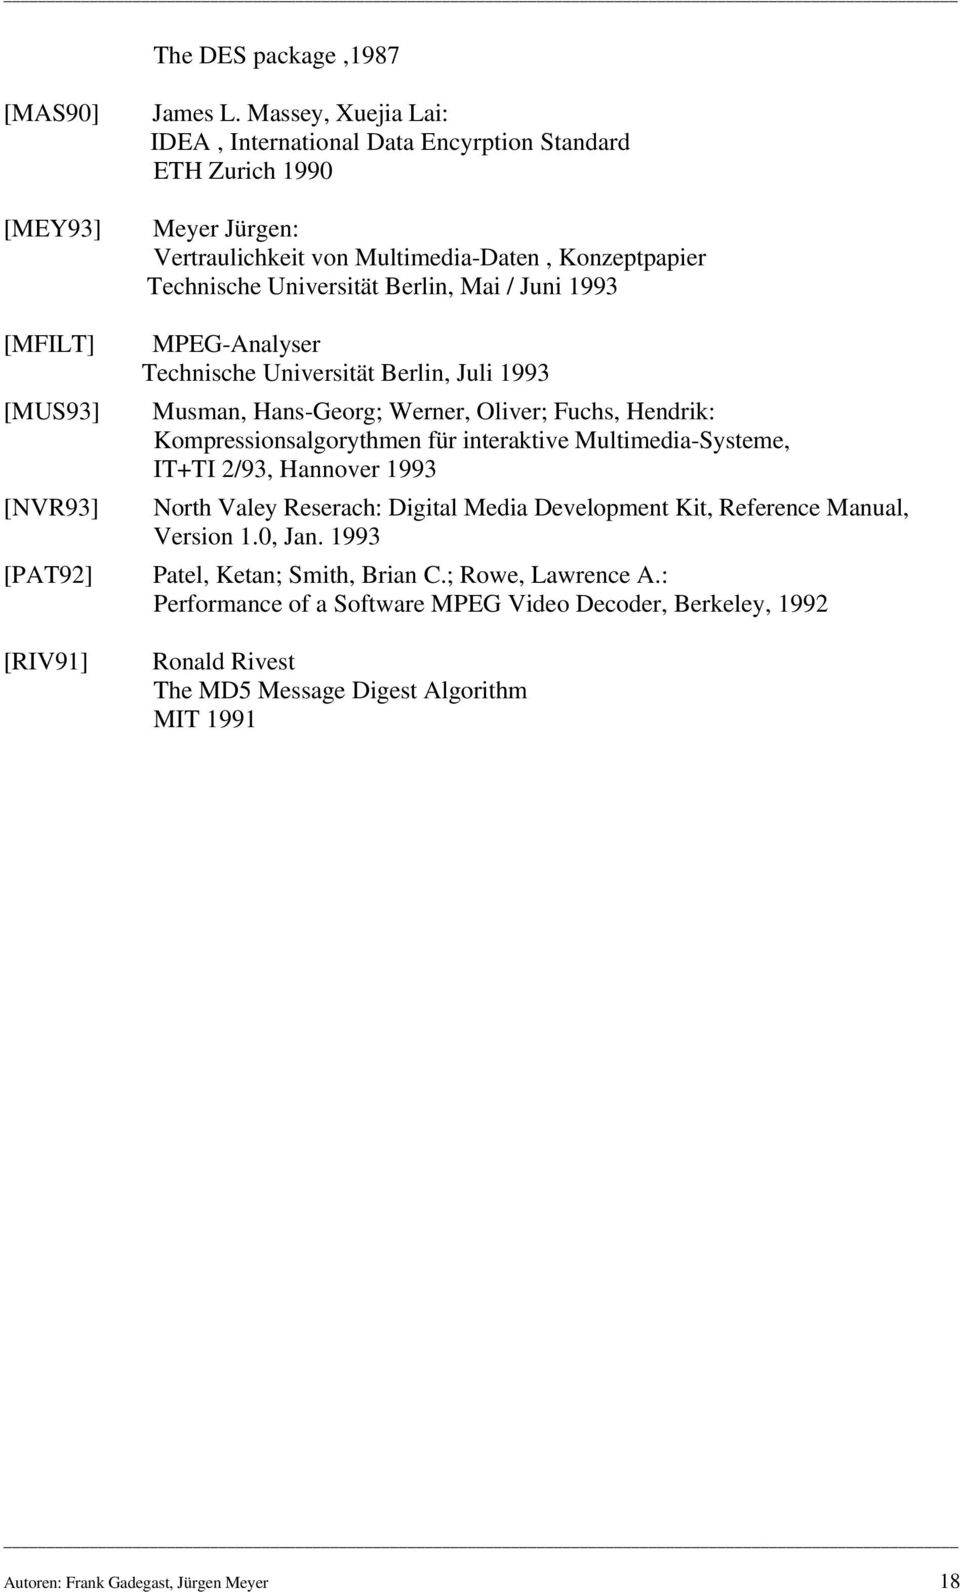 MPEG-Analyser Technische Universität Berlin, Juli 1993 Musman, Hans-Georg; Werner, Oliver; Fuchs, Hendrik: Kompressionsalgorythmen für interaktive Multimedia-Systeme, IT+TI 2/93, Hannover 1993